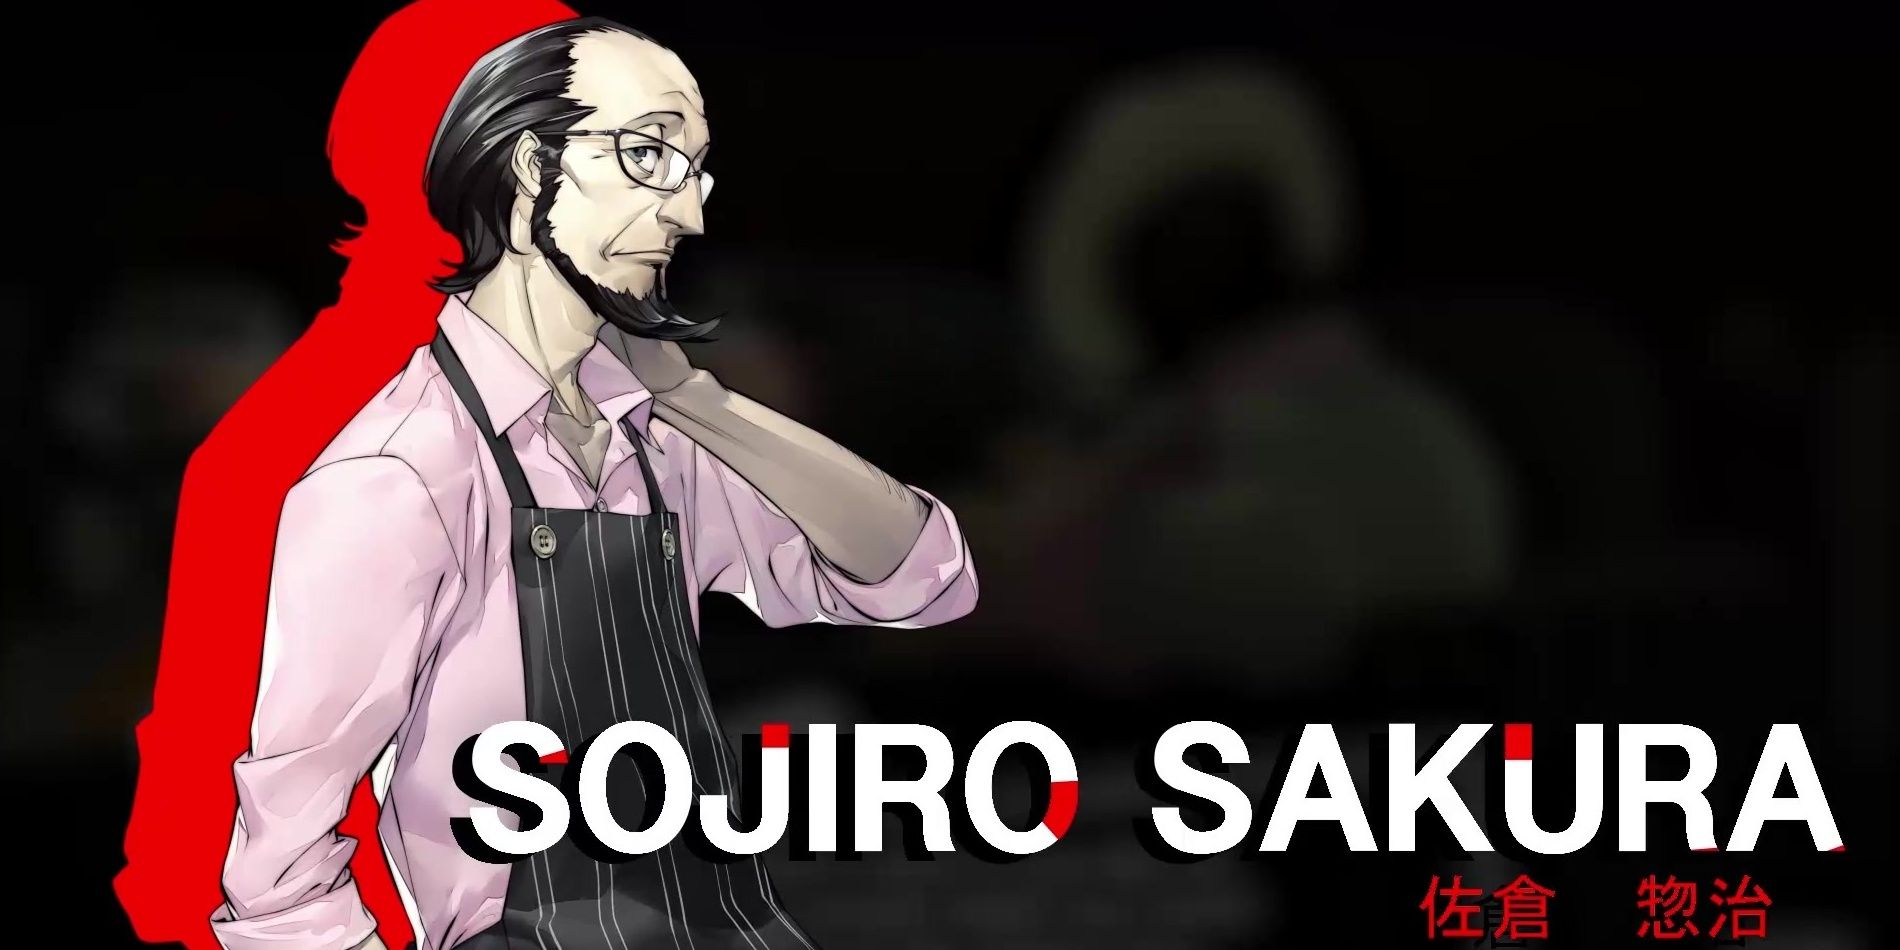 Sojiro Sakura from Persona 5